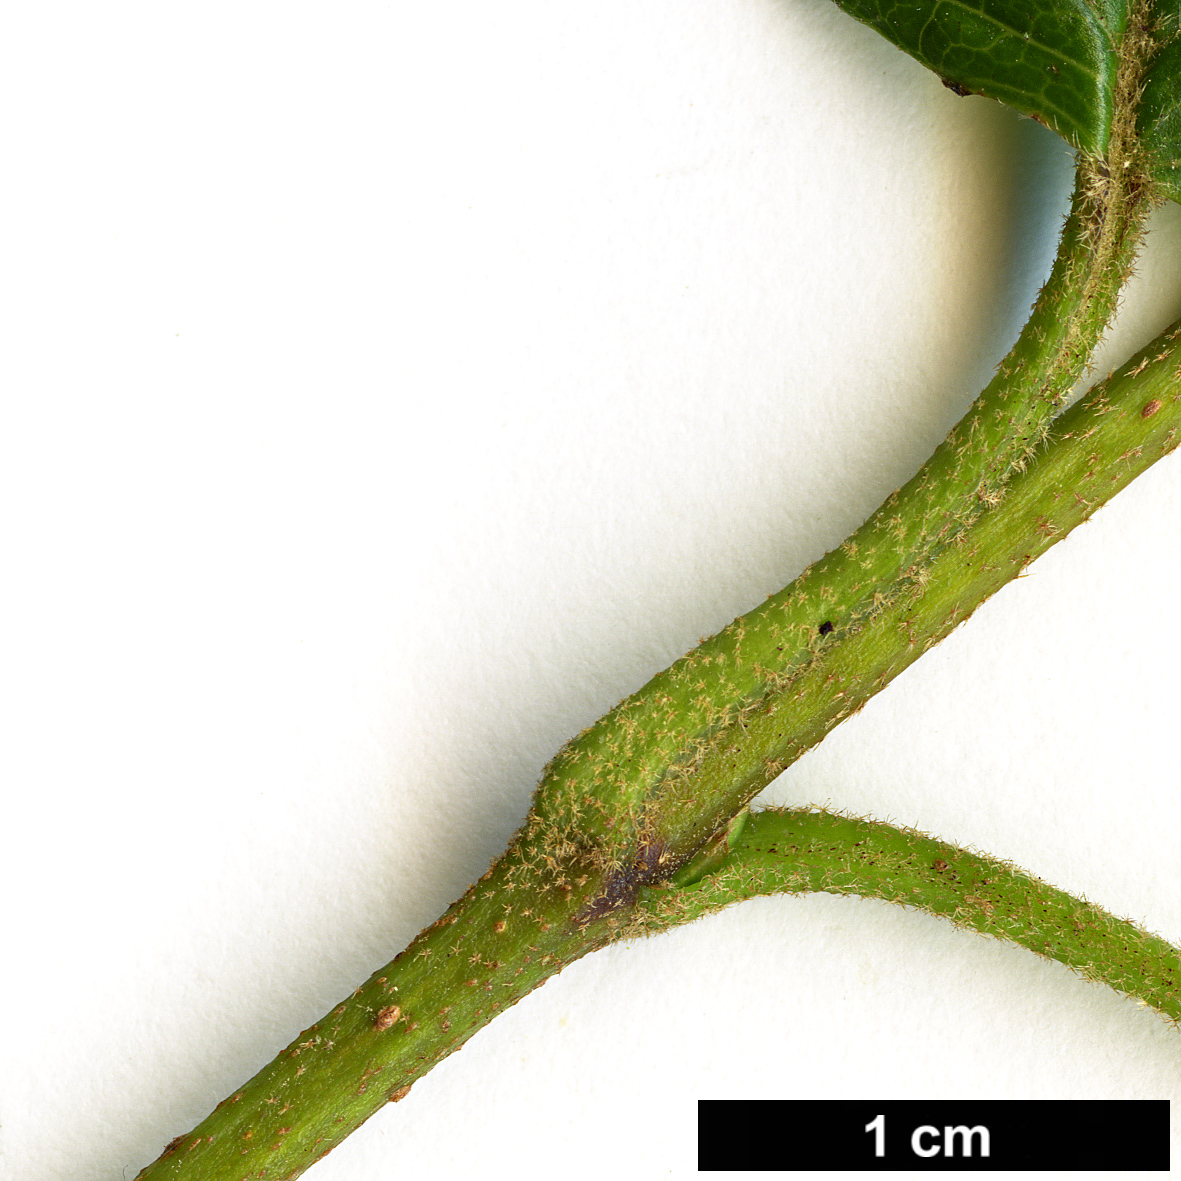 High resolution image: Family: Adoxaceae - Genus: Viburnum - Taxon: bracteatum